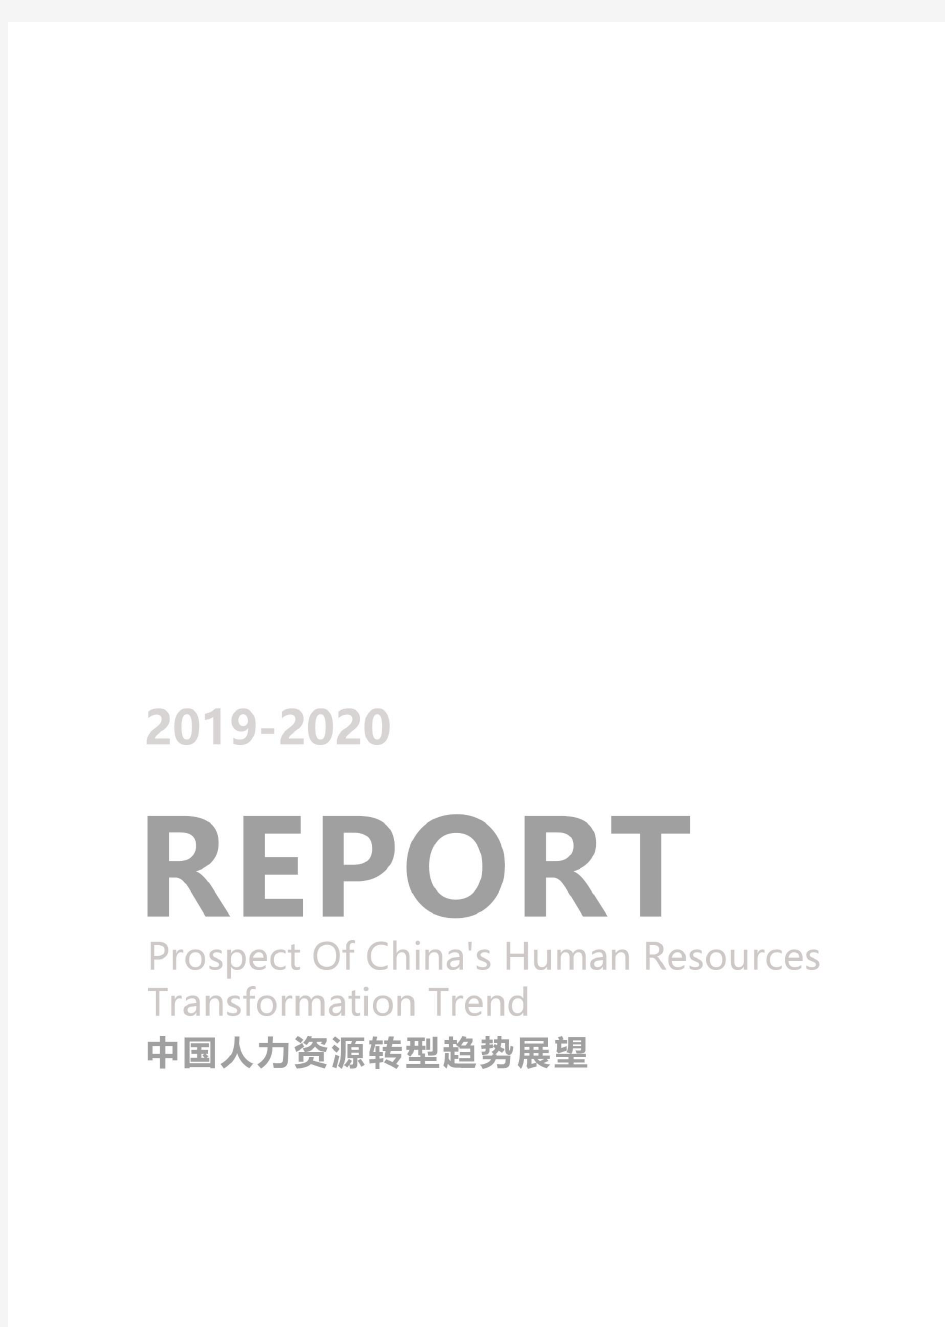 《2019-2020中国人力资源转型趋势展望》